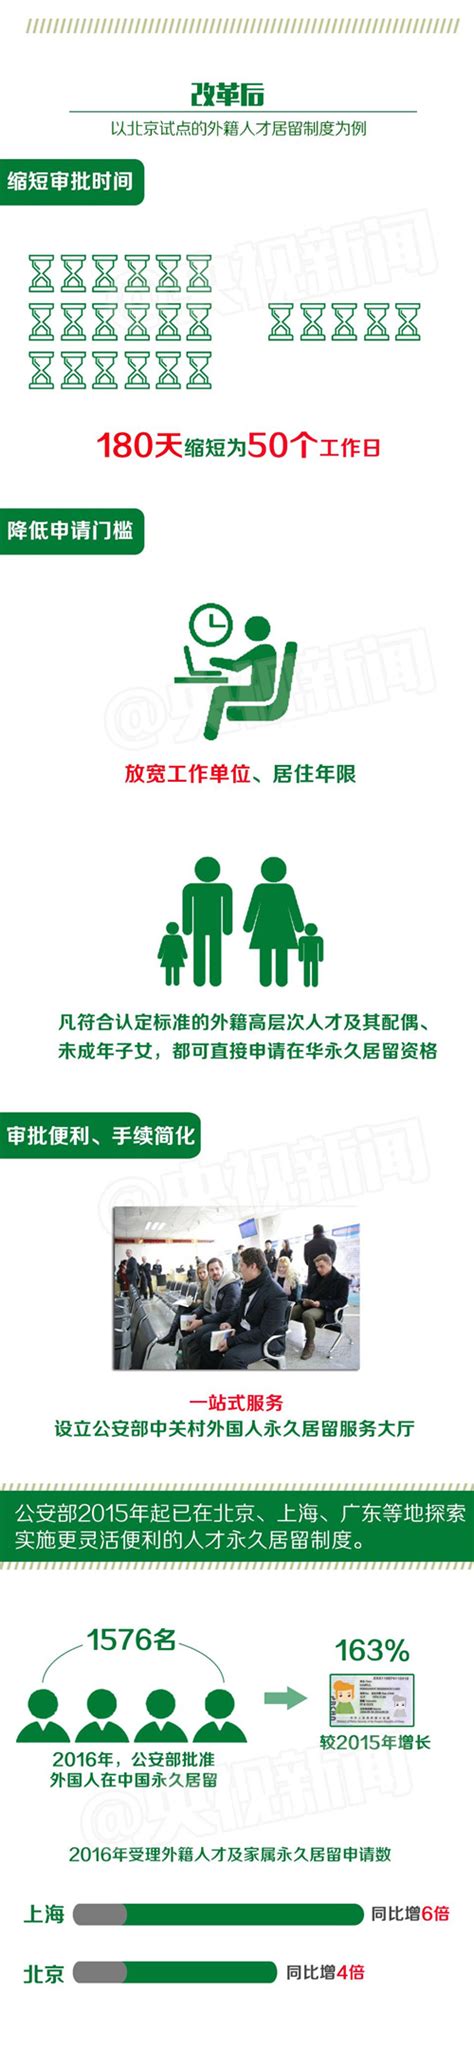 广州市人才绿卡申请表(可下载打印)_文档之家